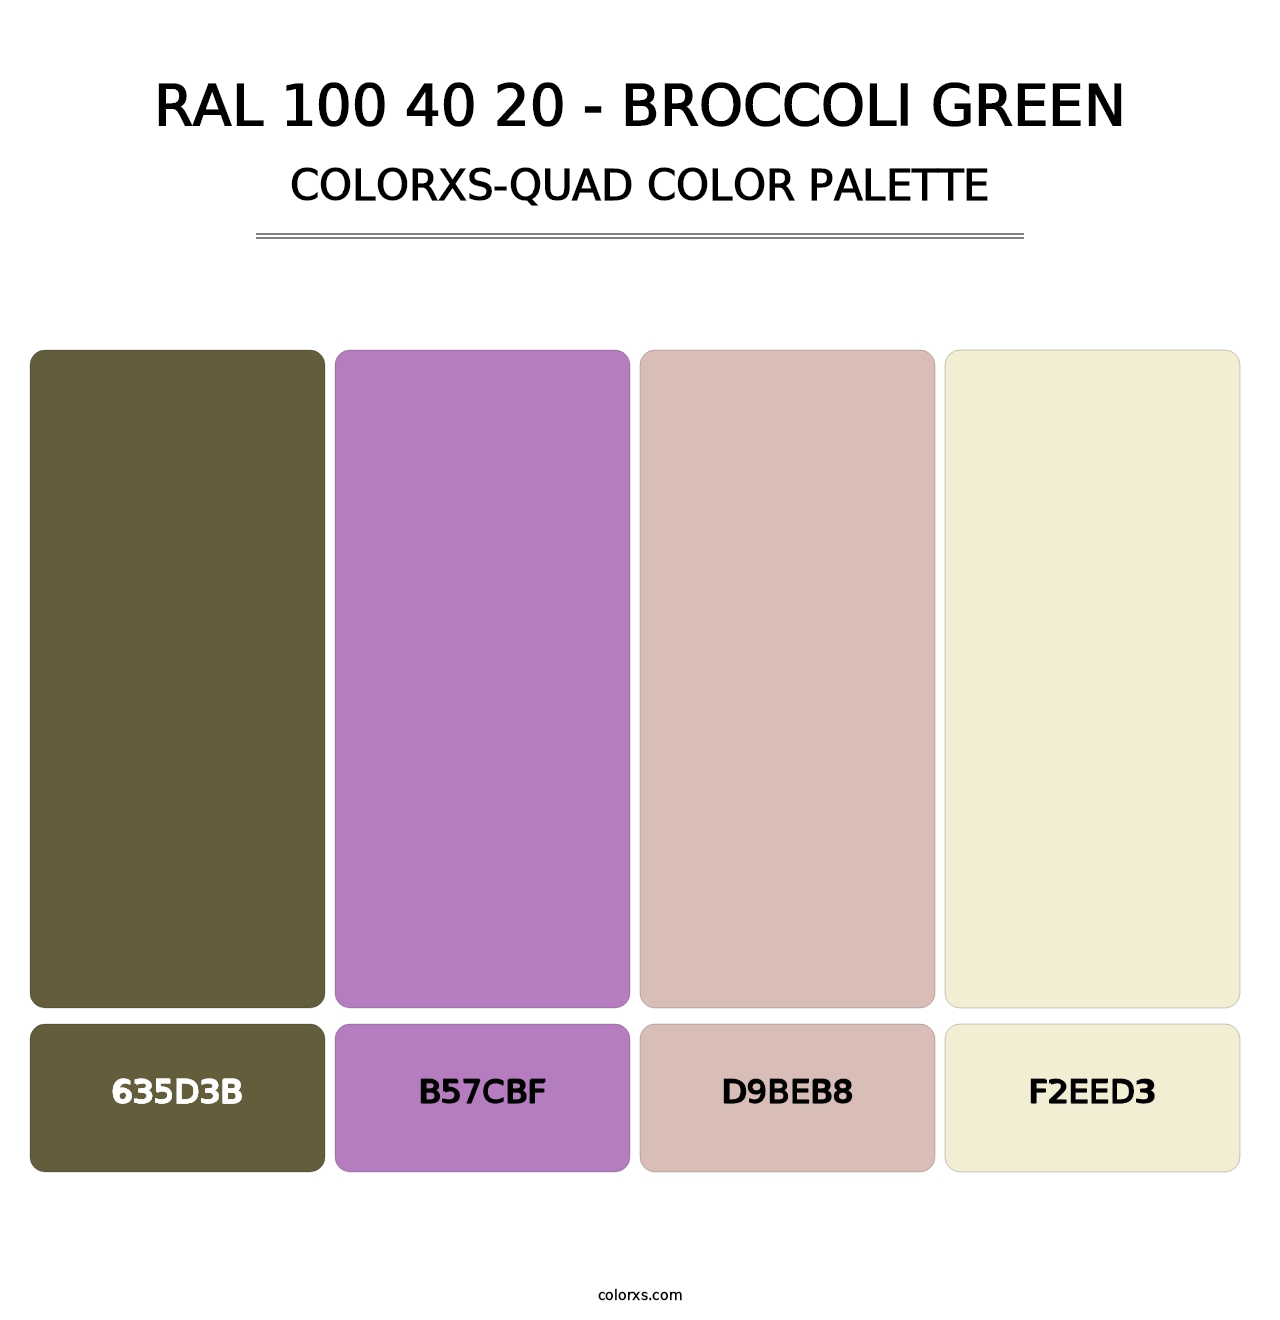 RAL 100 40 20 - Broccoli Green - Colorxs Quad Palette